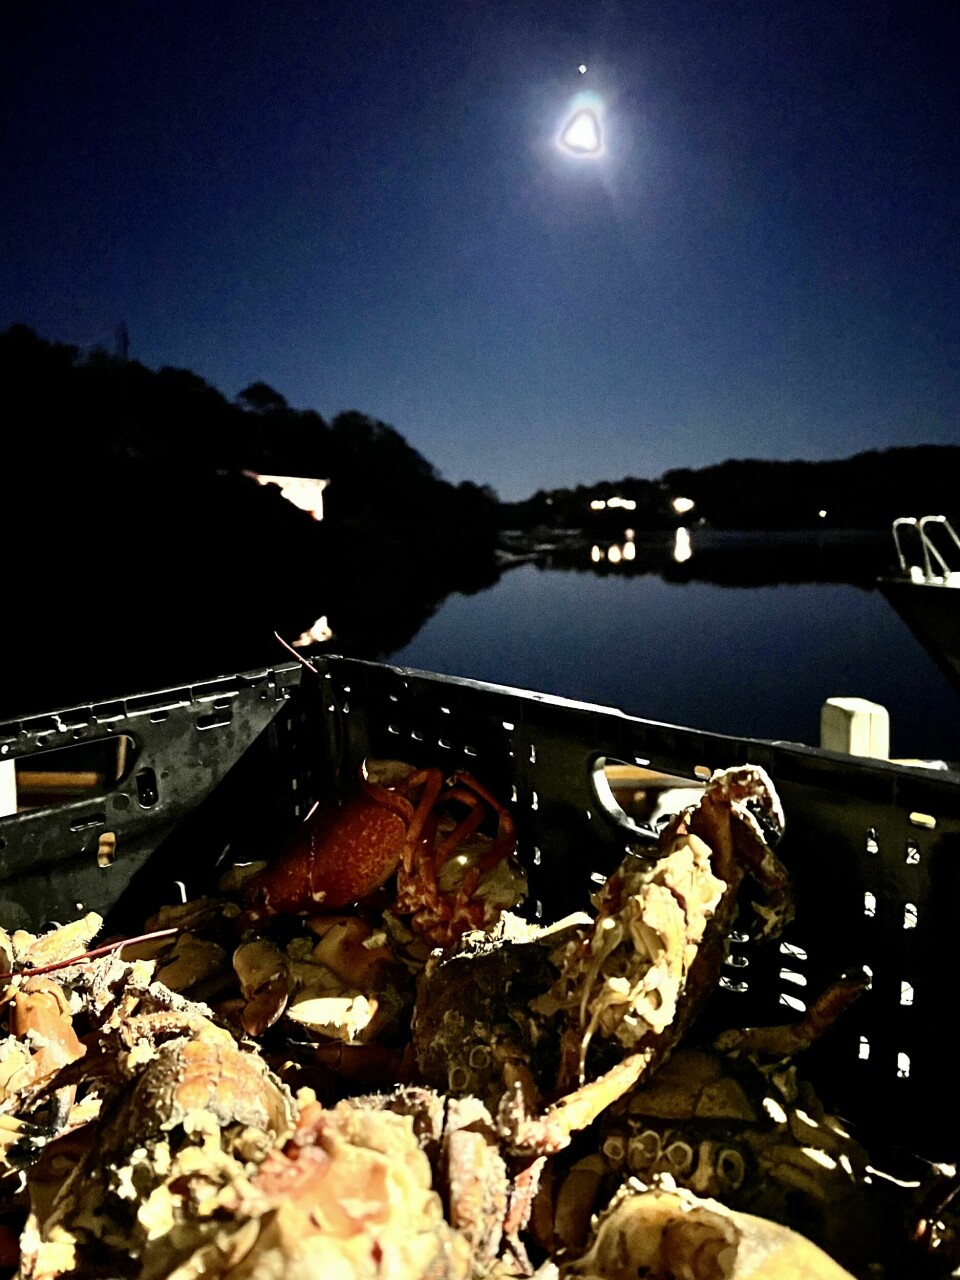 HERLIG KOMBINASJON: Nykokte krabber under månen - med en tydelig Jupiter over månen en lørdag kveld i oktober.